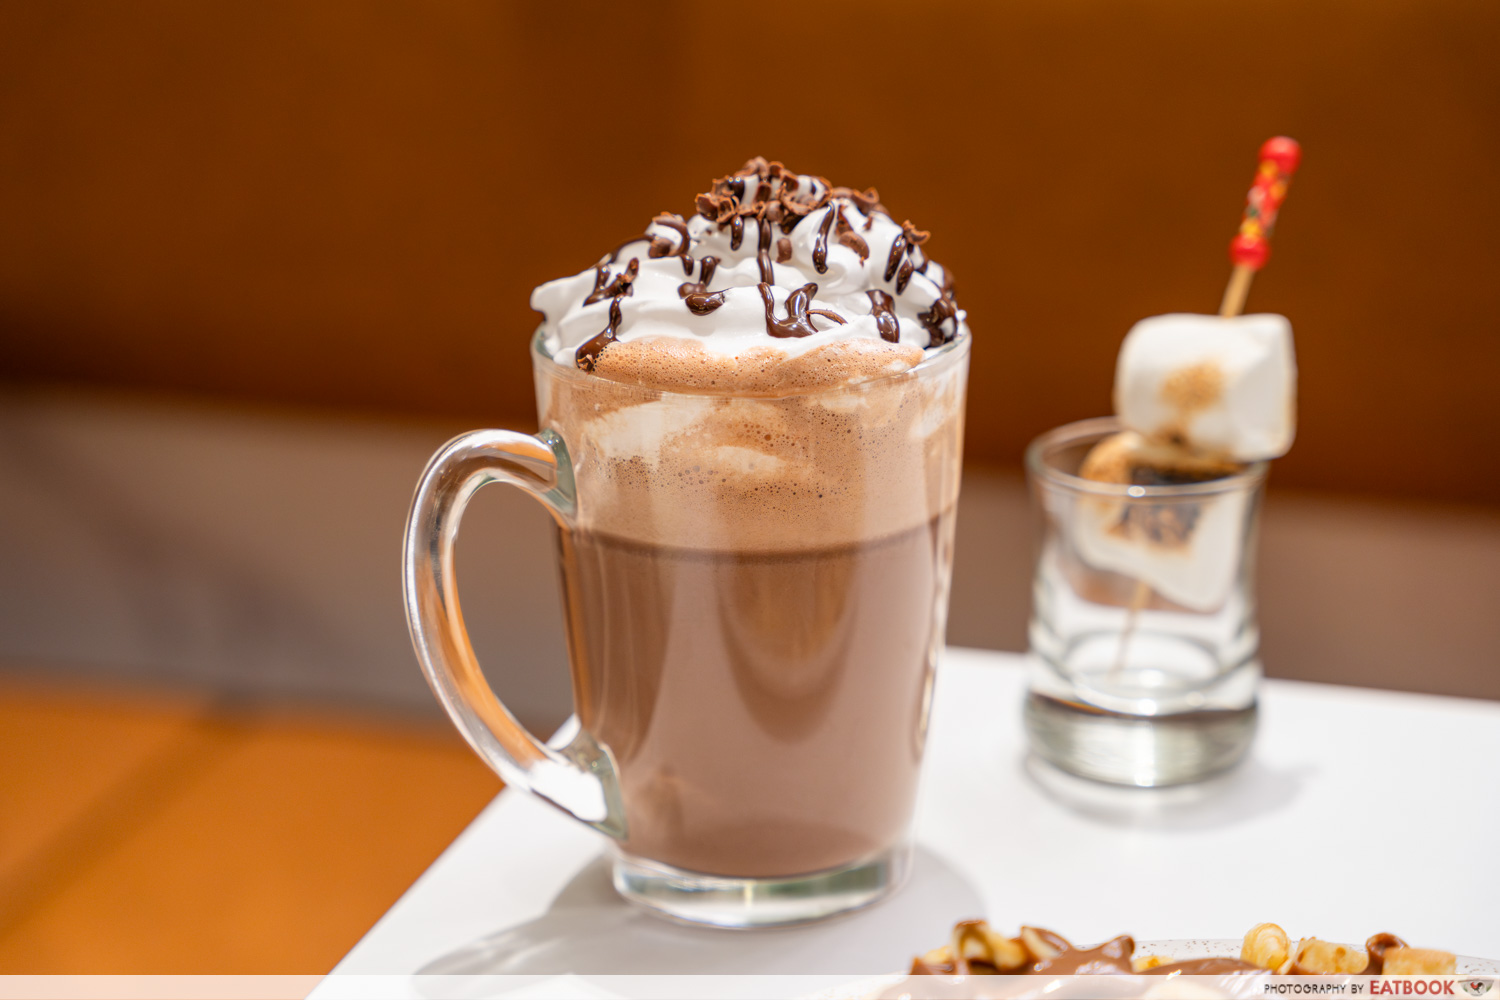 dipndip singapore - hot chocolate